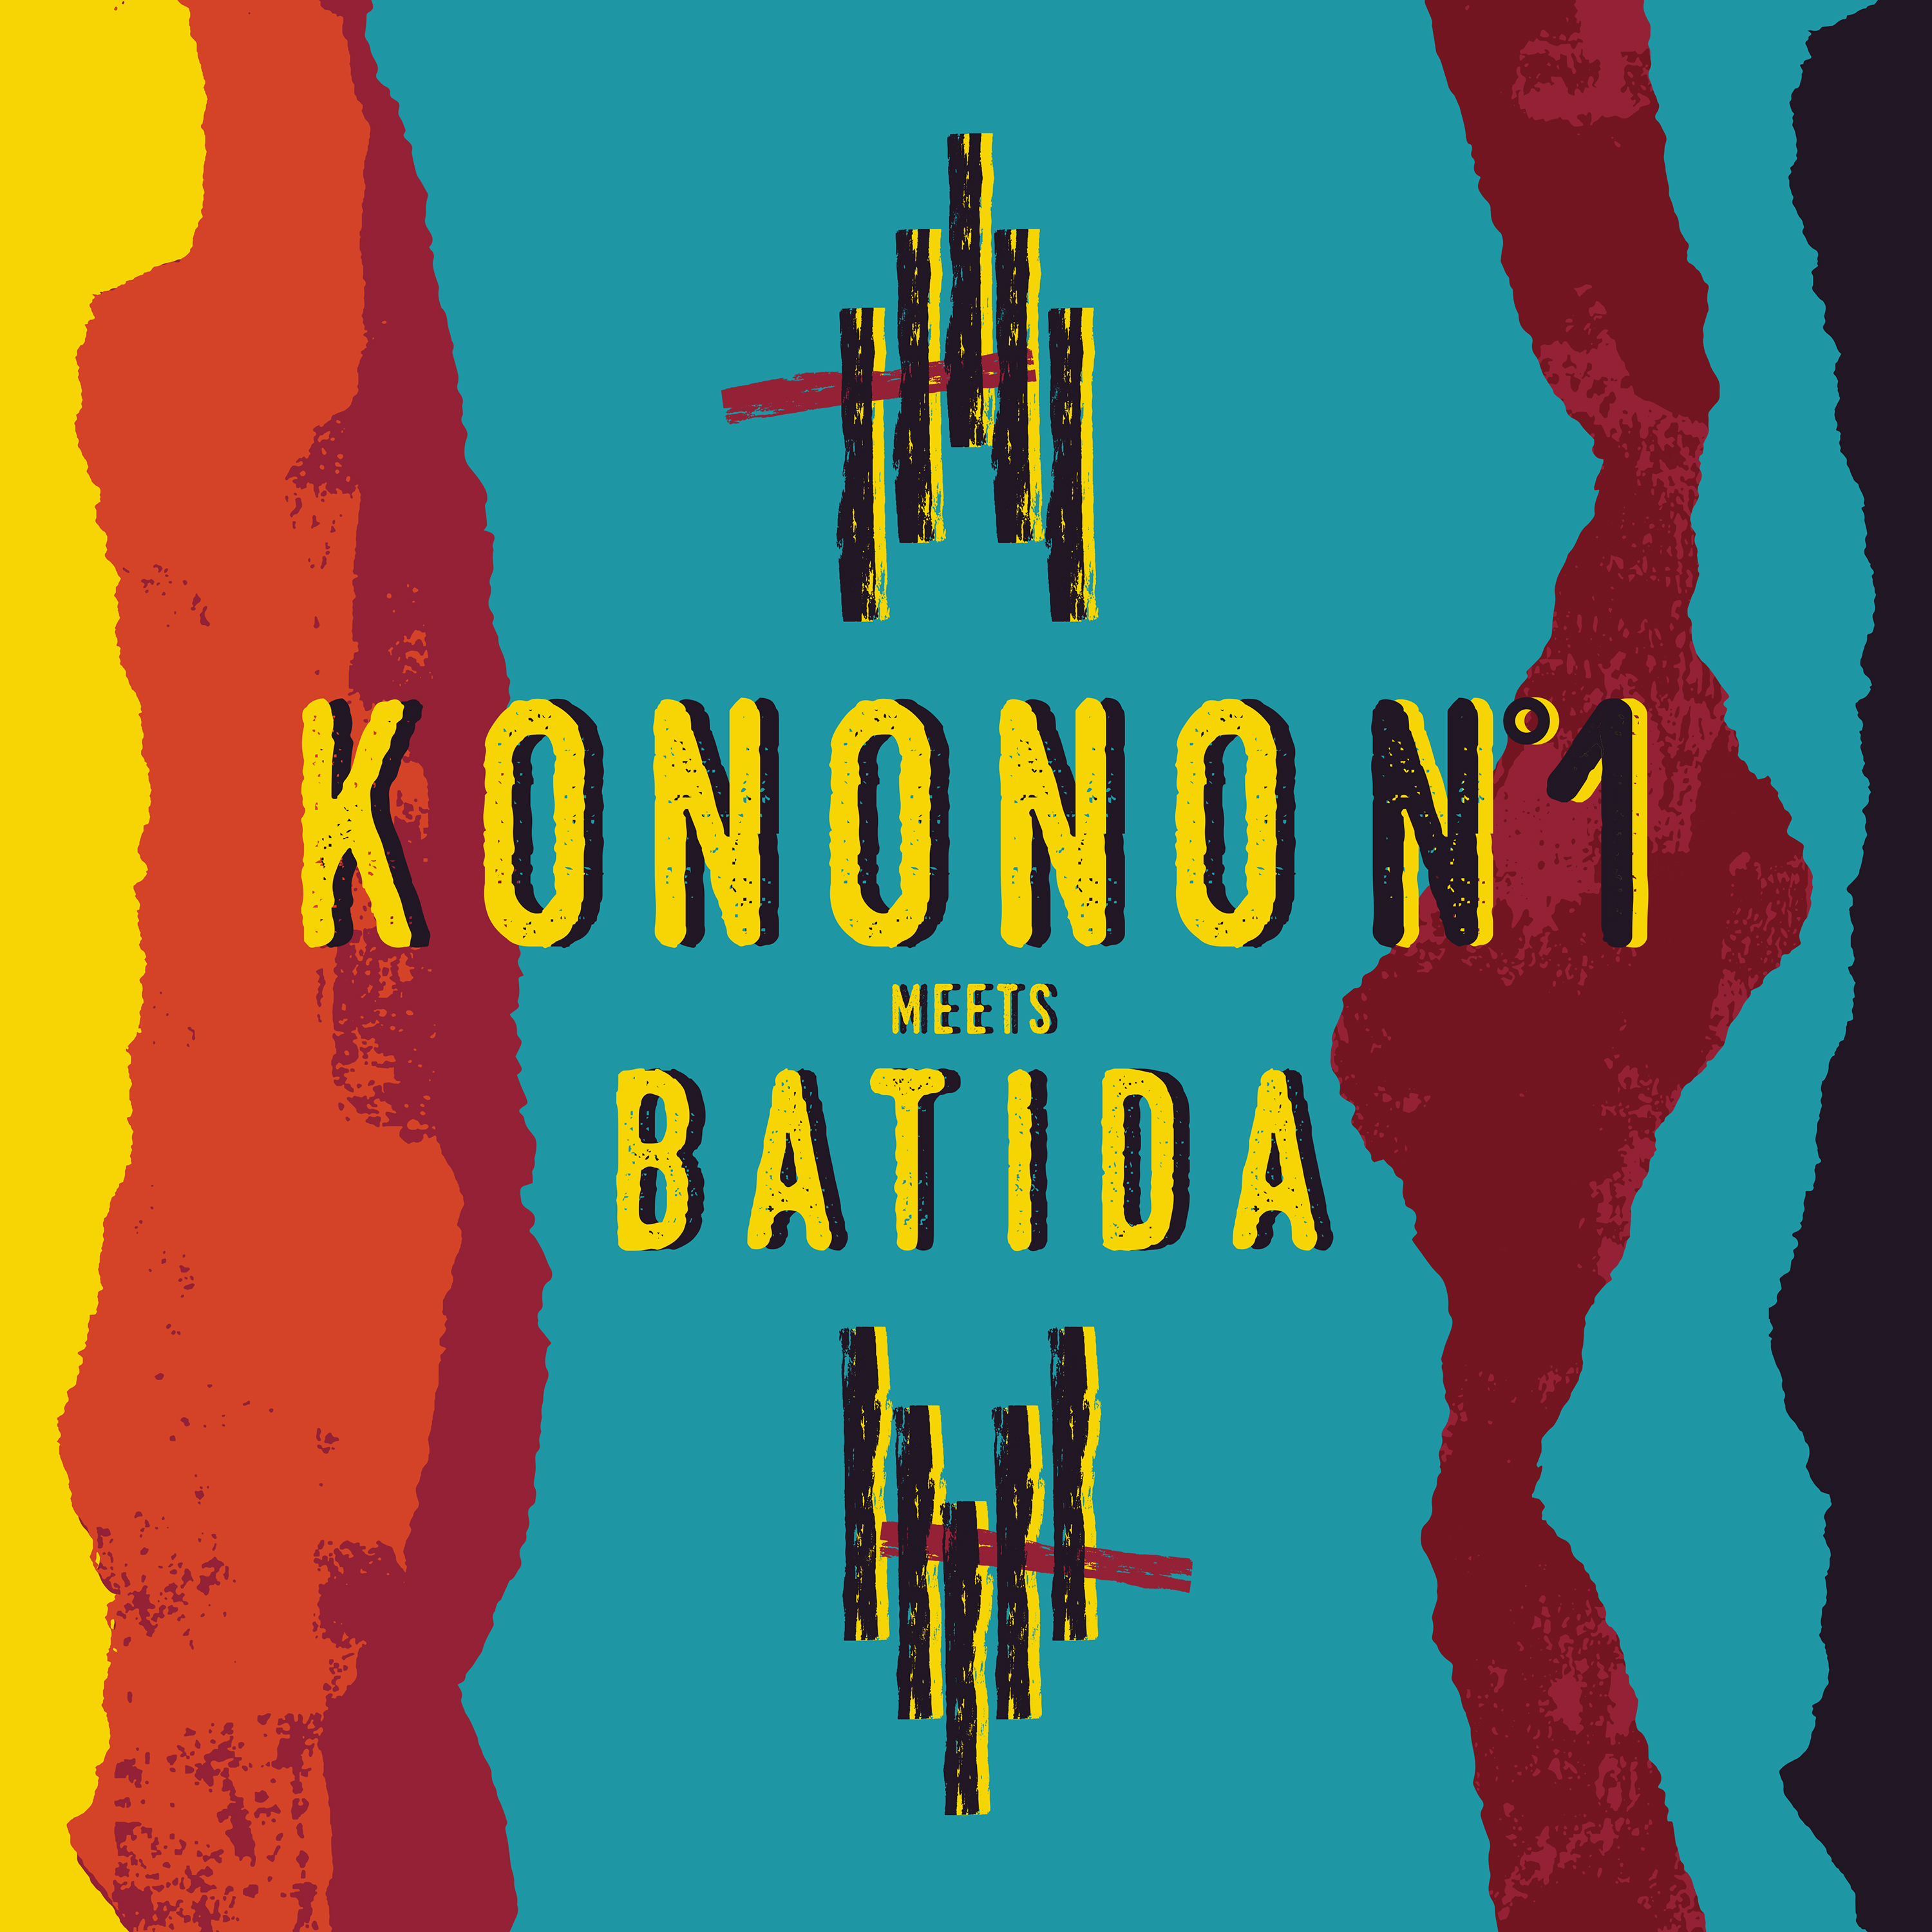 KONONO NO.1 - Konono No.1 meets Batida